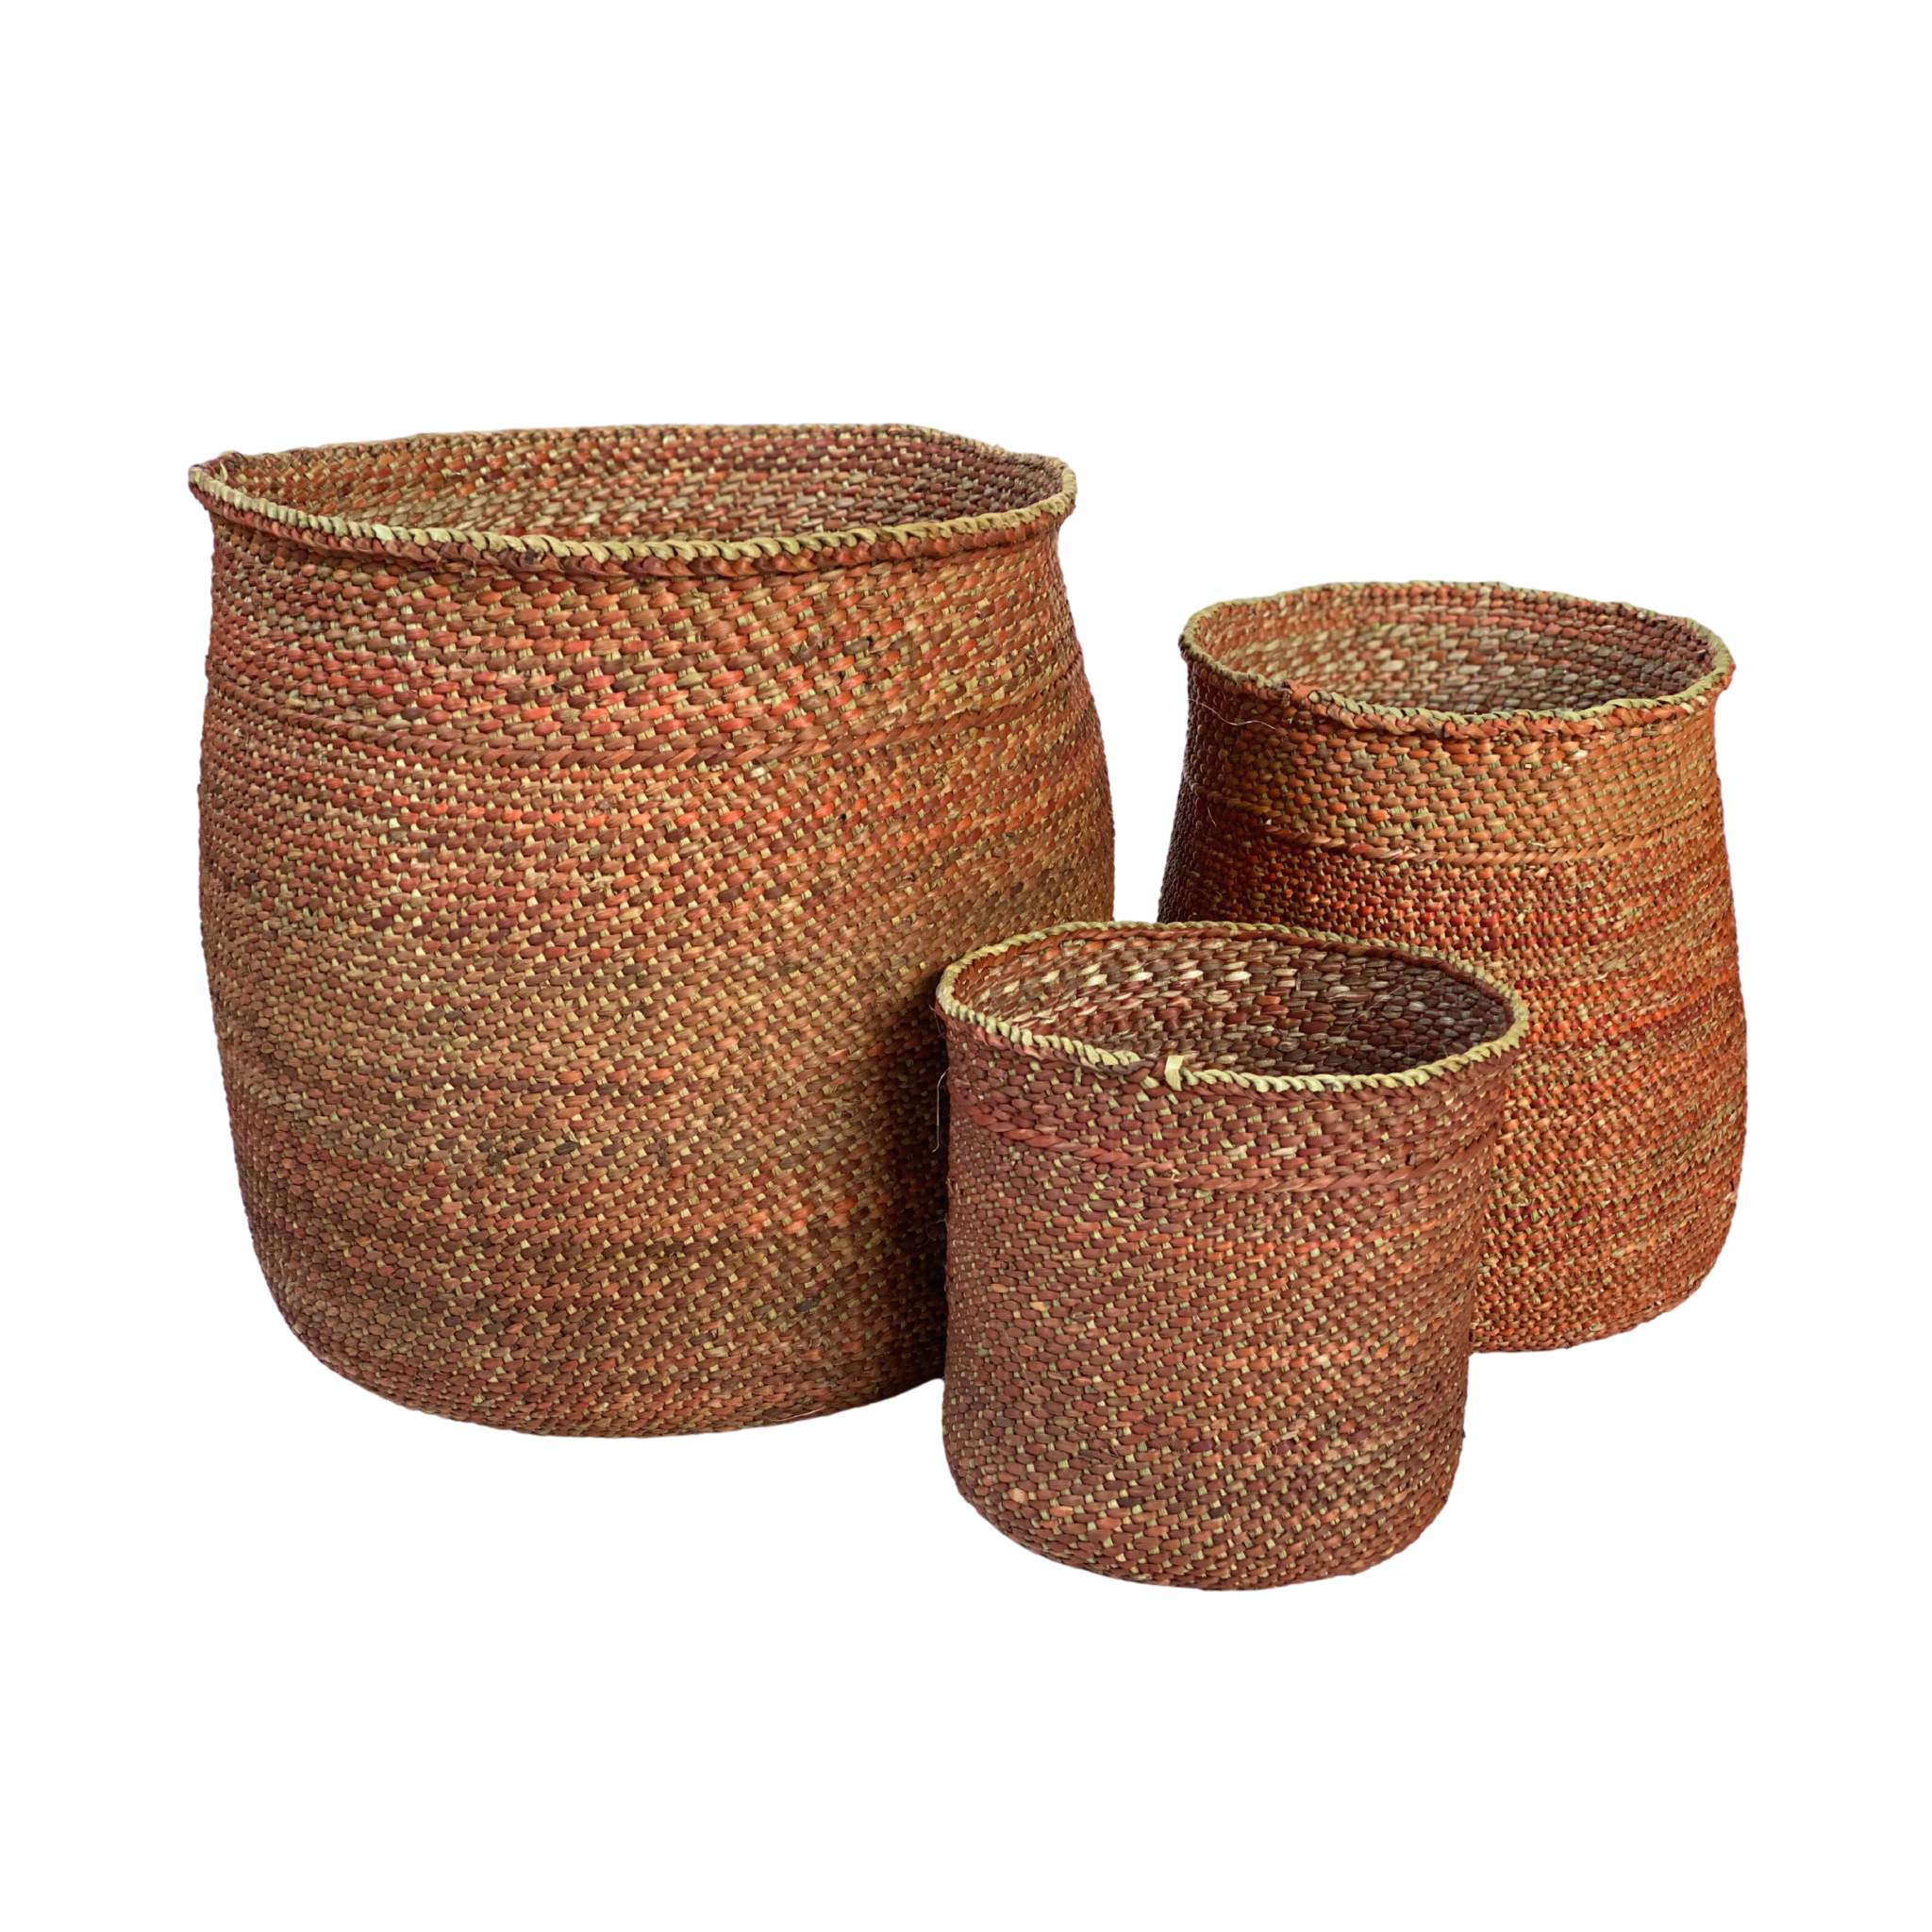 Iringa basket Terra-Artisan Traders-african,african basket,basket,fairtrade,handcrafted,iringa